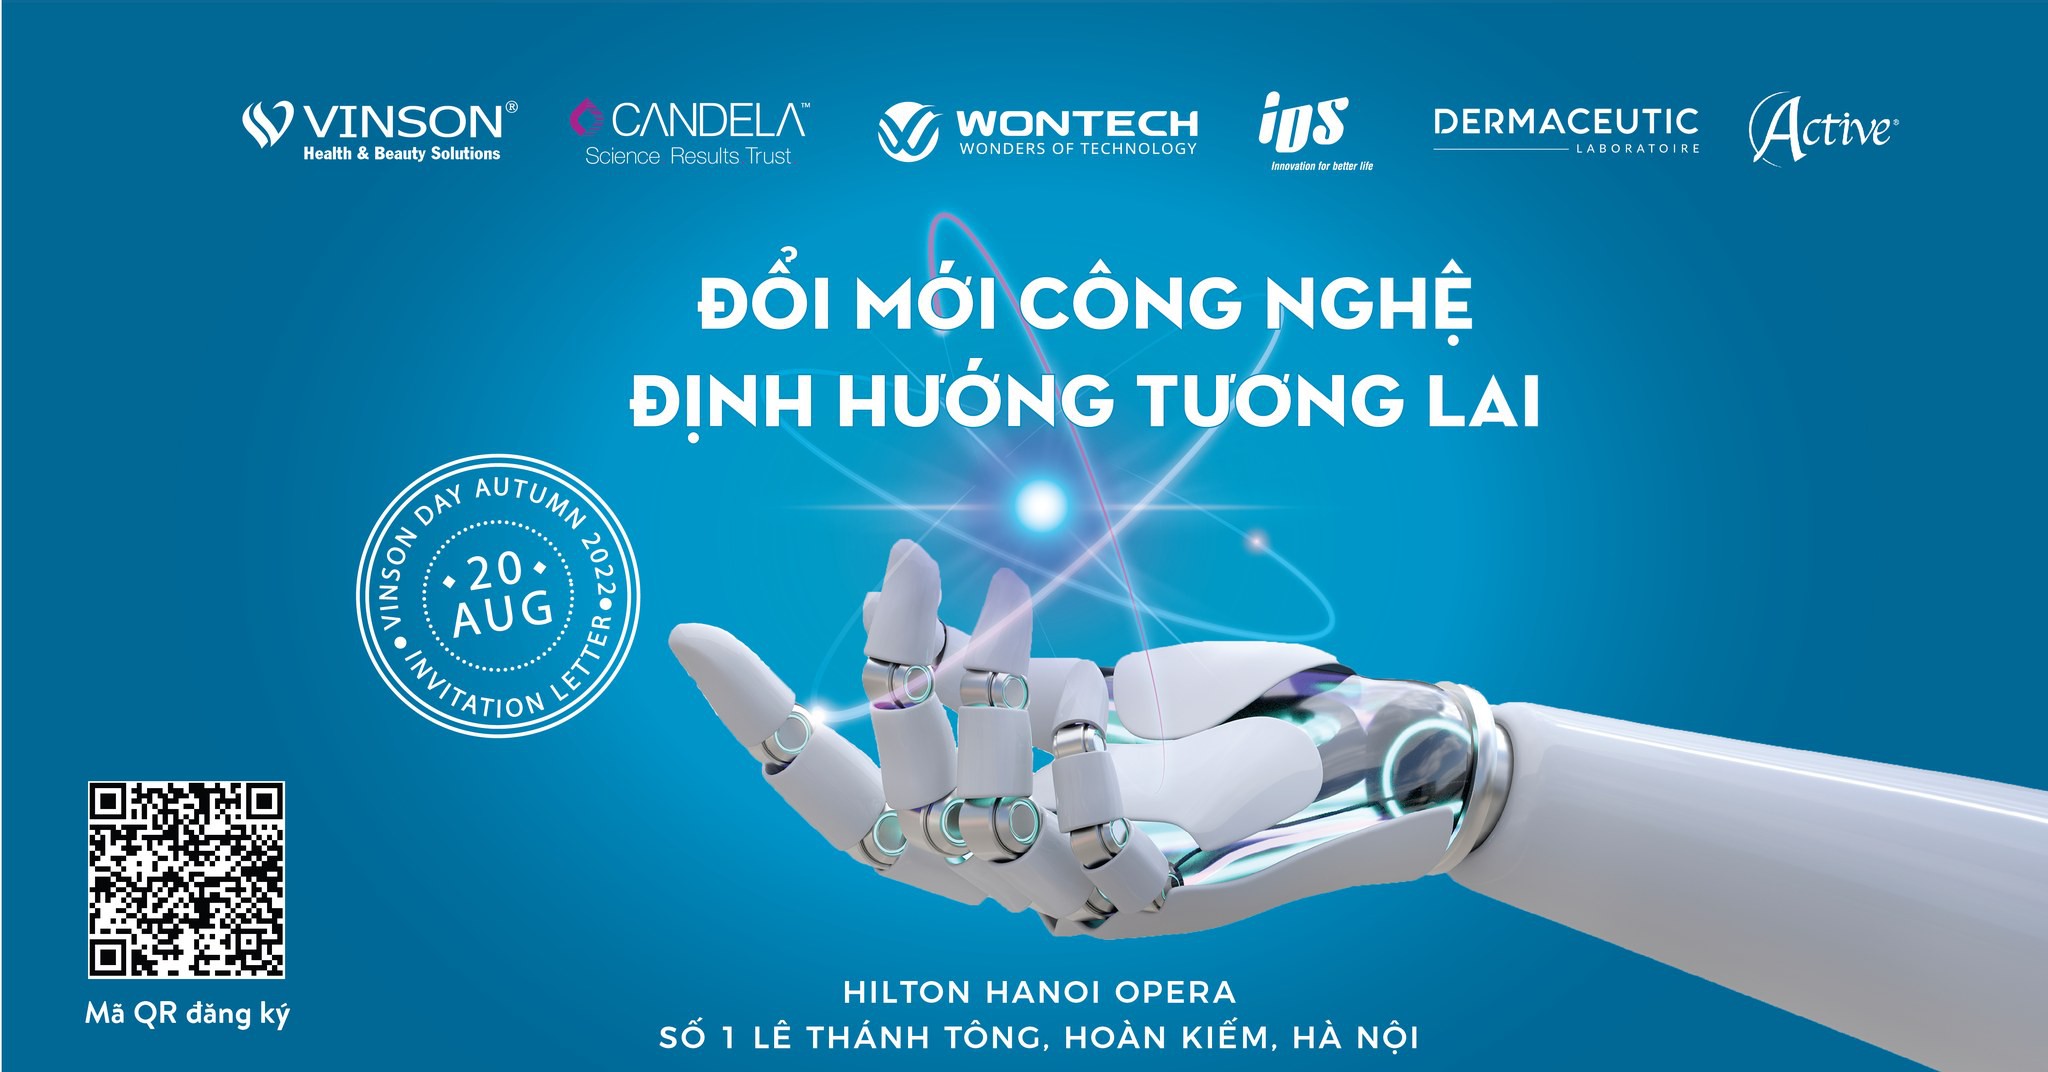 Sự kiện hứa hẹn sẽ mang đến nhiều thông tin hấp dẫn cùng các công nghệ mới nhất, tạo đột phá tại thị trường thẩm mỹ Việt Nam.